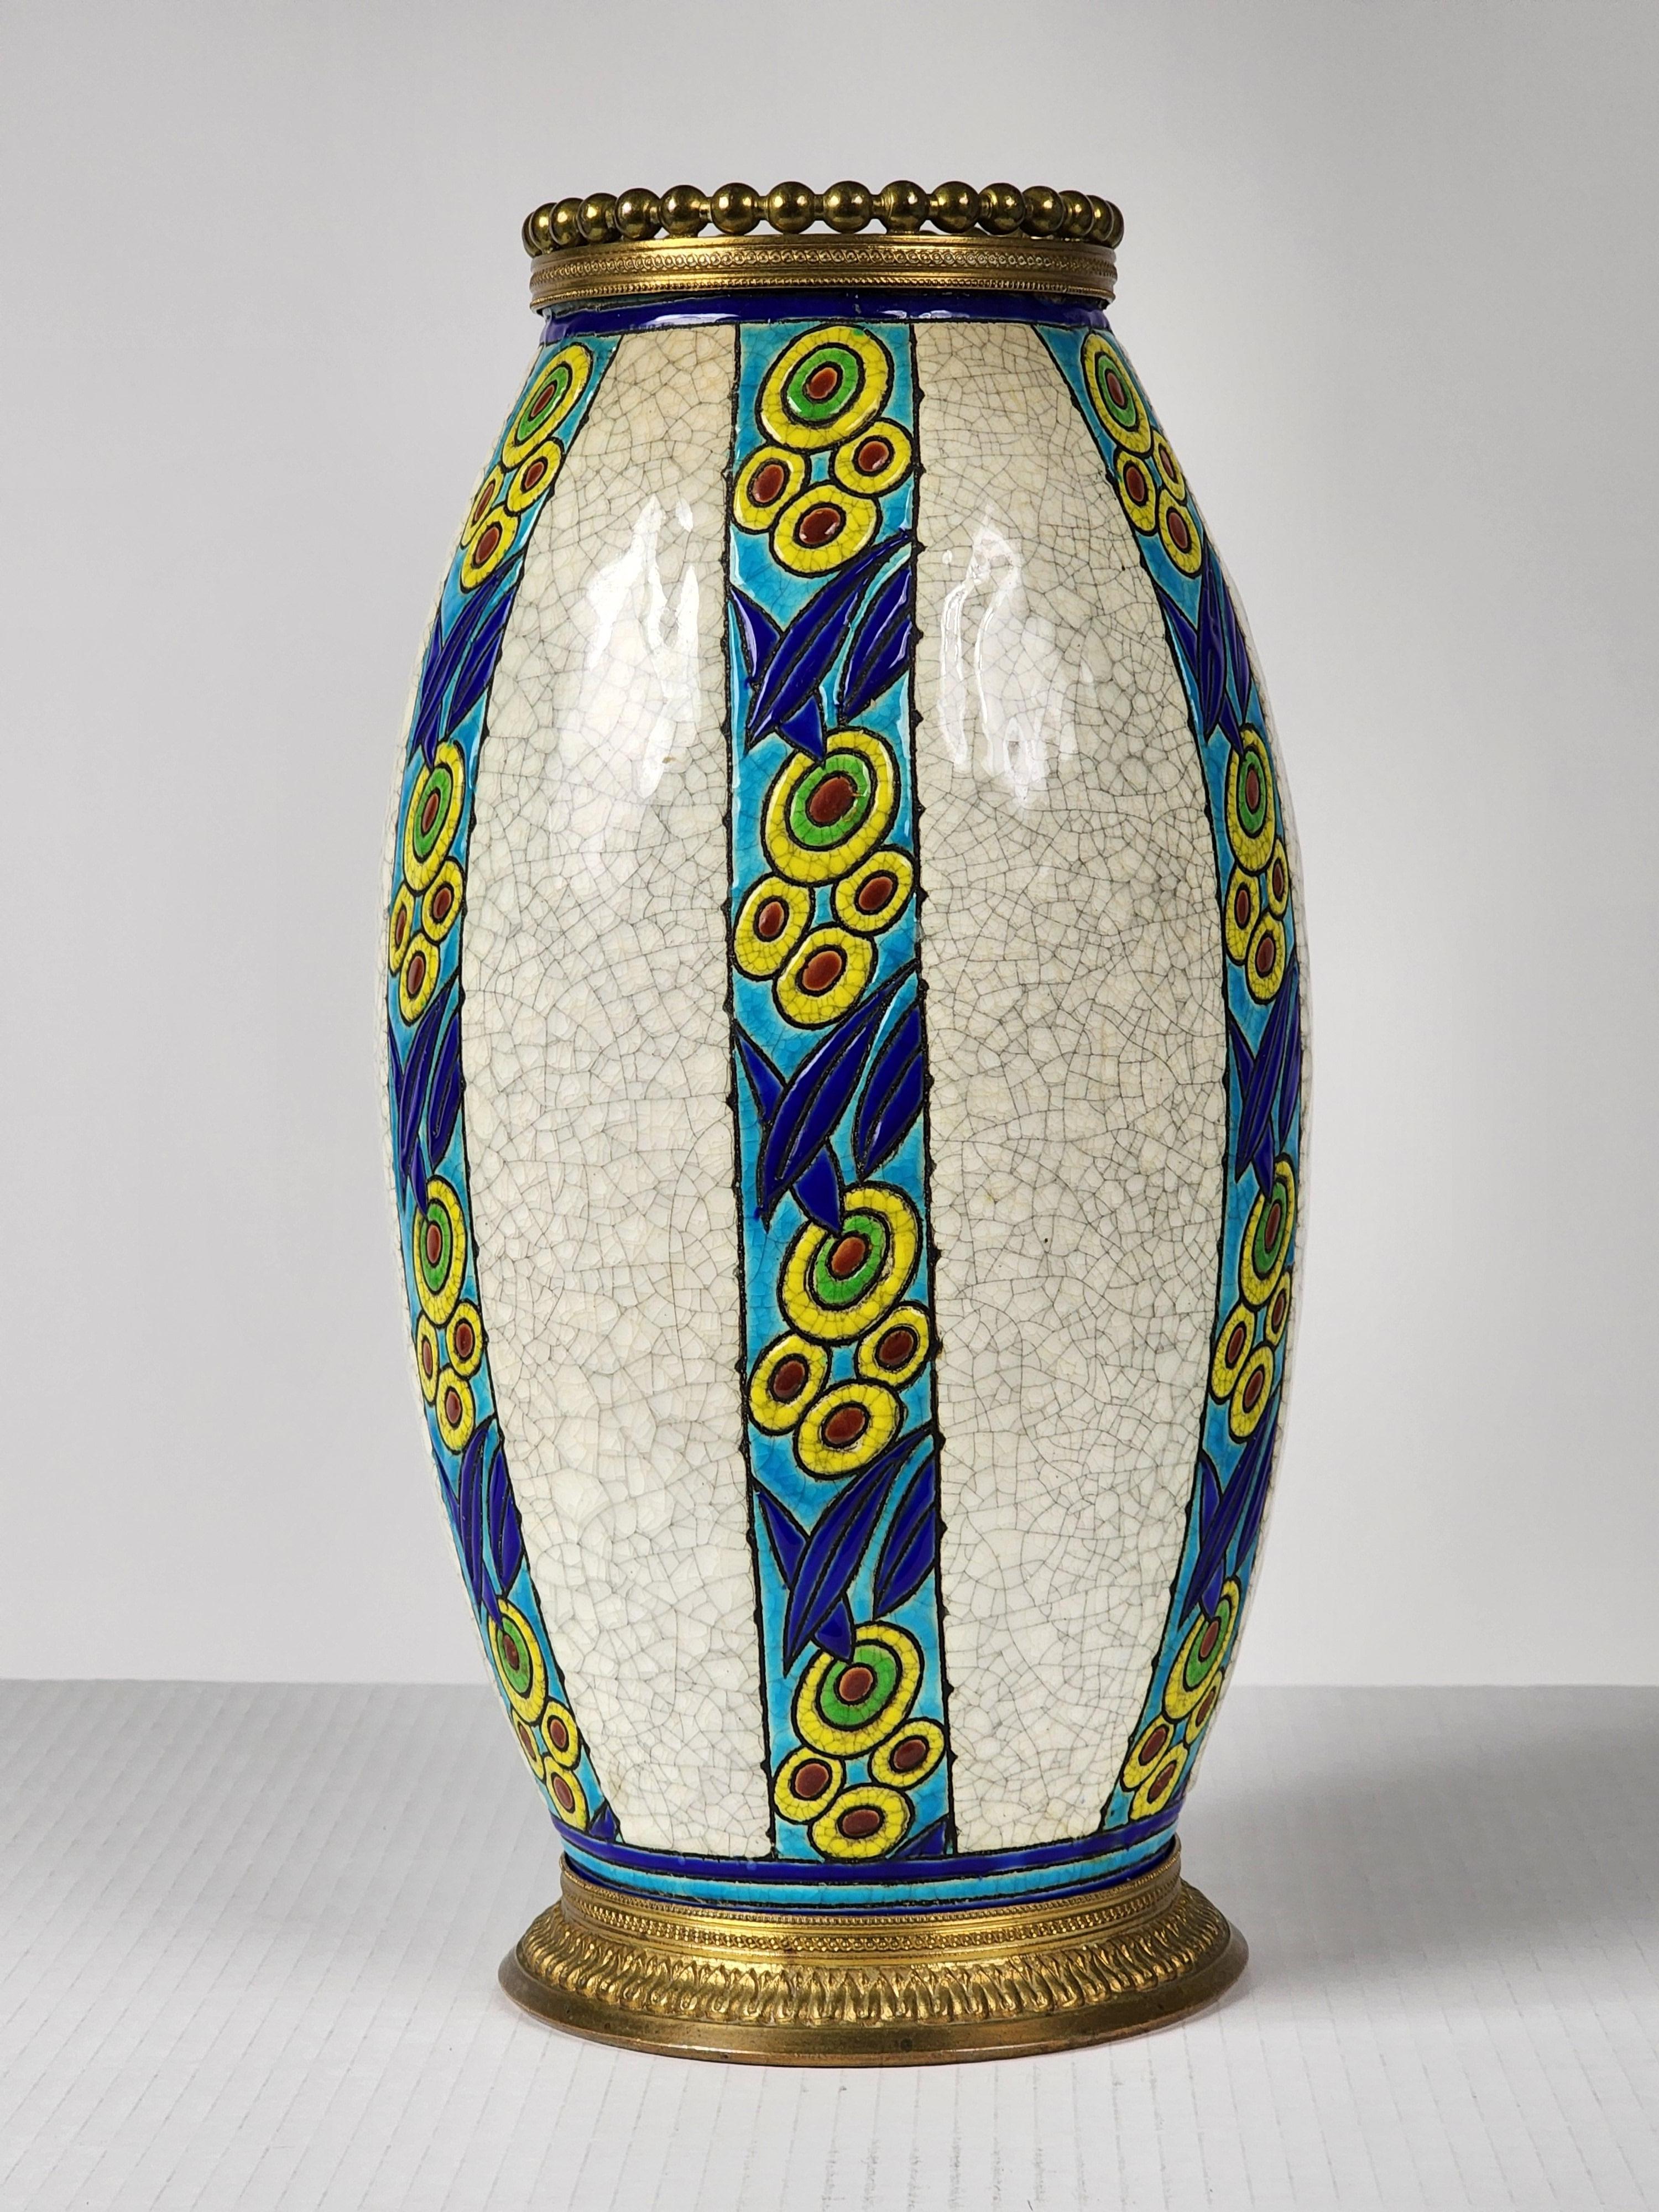 Rare  Version du vase de Charles Catteau avec une garniture en laiton massif finement détaillée. 

Fabriqué en Belgique pour Boch Frères Keramis, modèle 895 D. 947

La couronne sur le dessus mesure 4,25 pouces au point le plus large.

